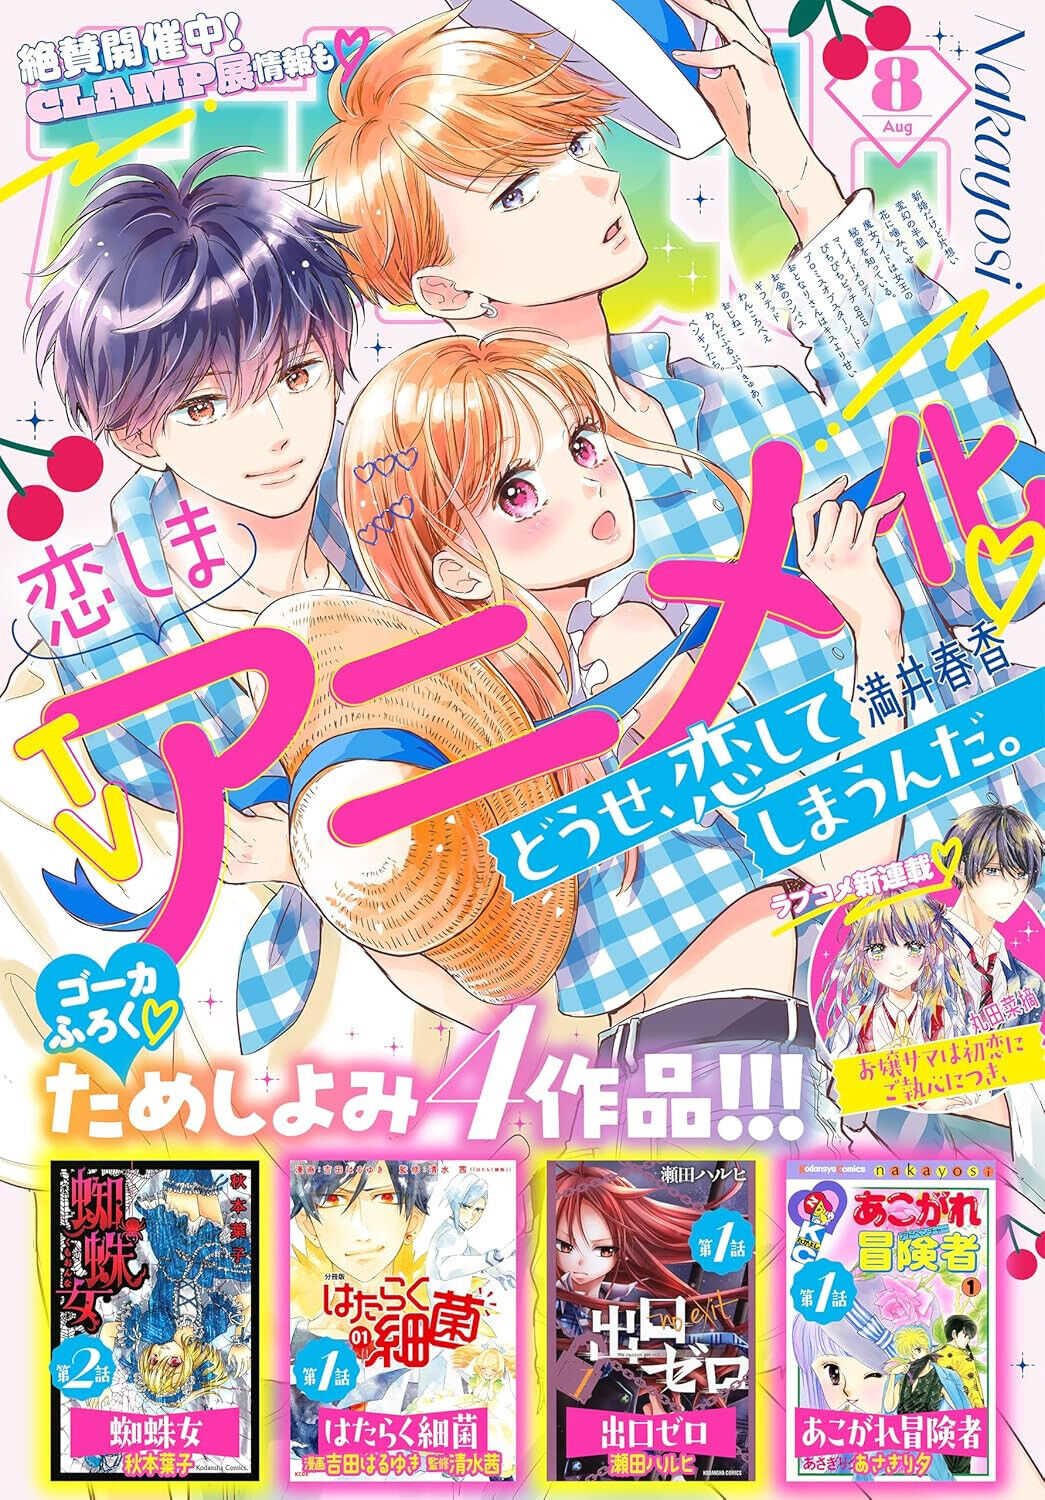 Nakayoshi Aug 2024 Japanese Shojo Manga Magazine + Freebies